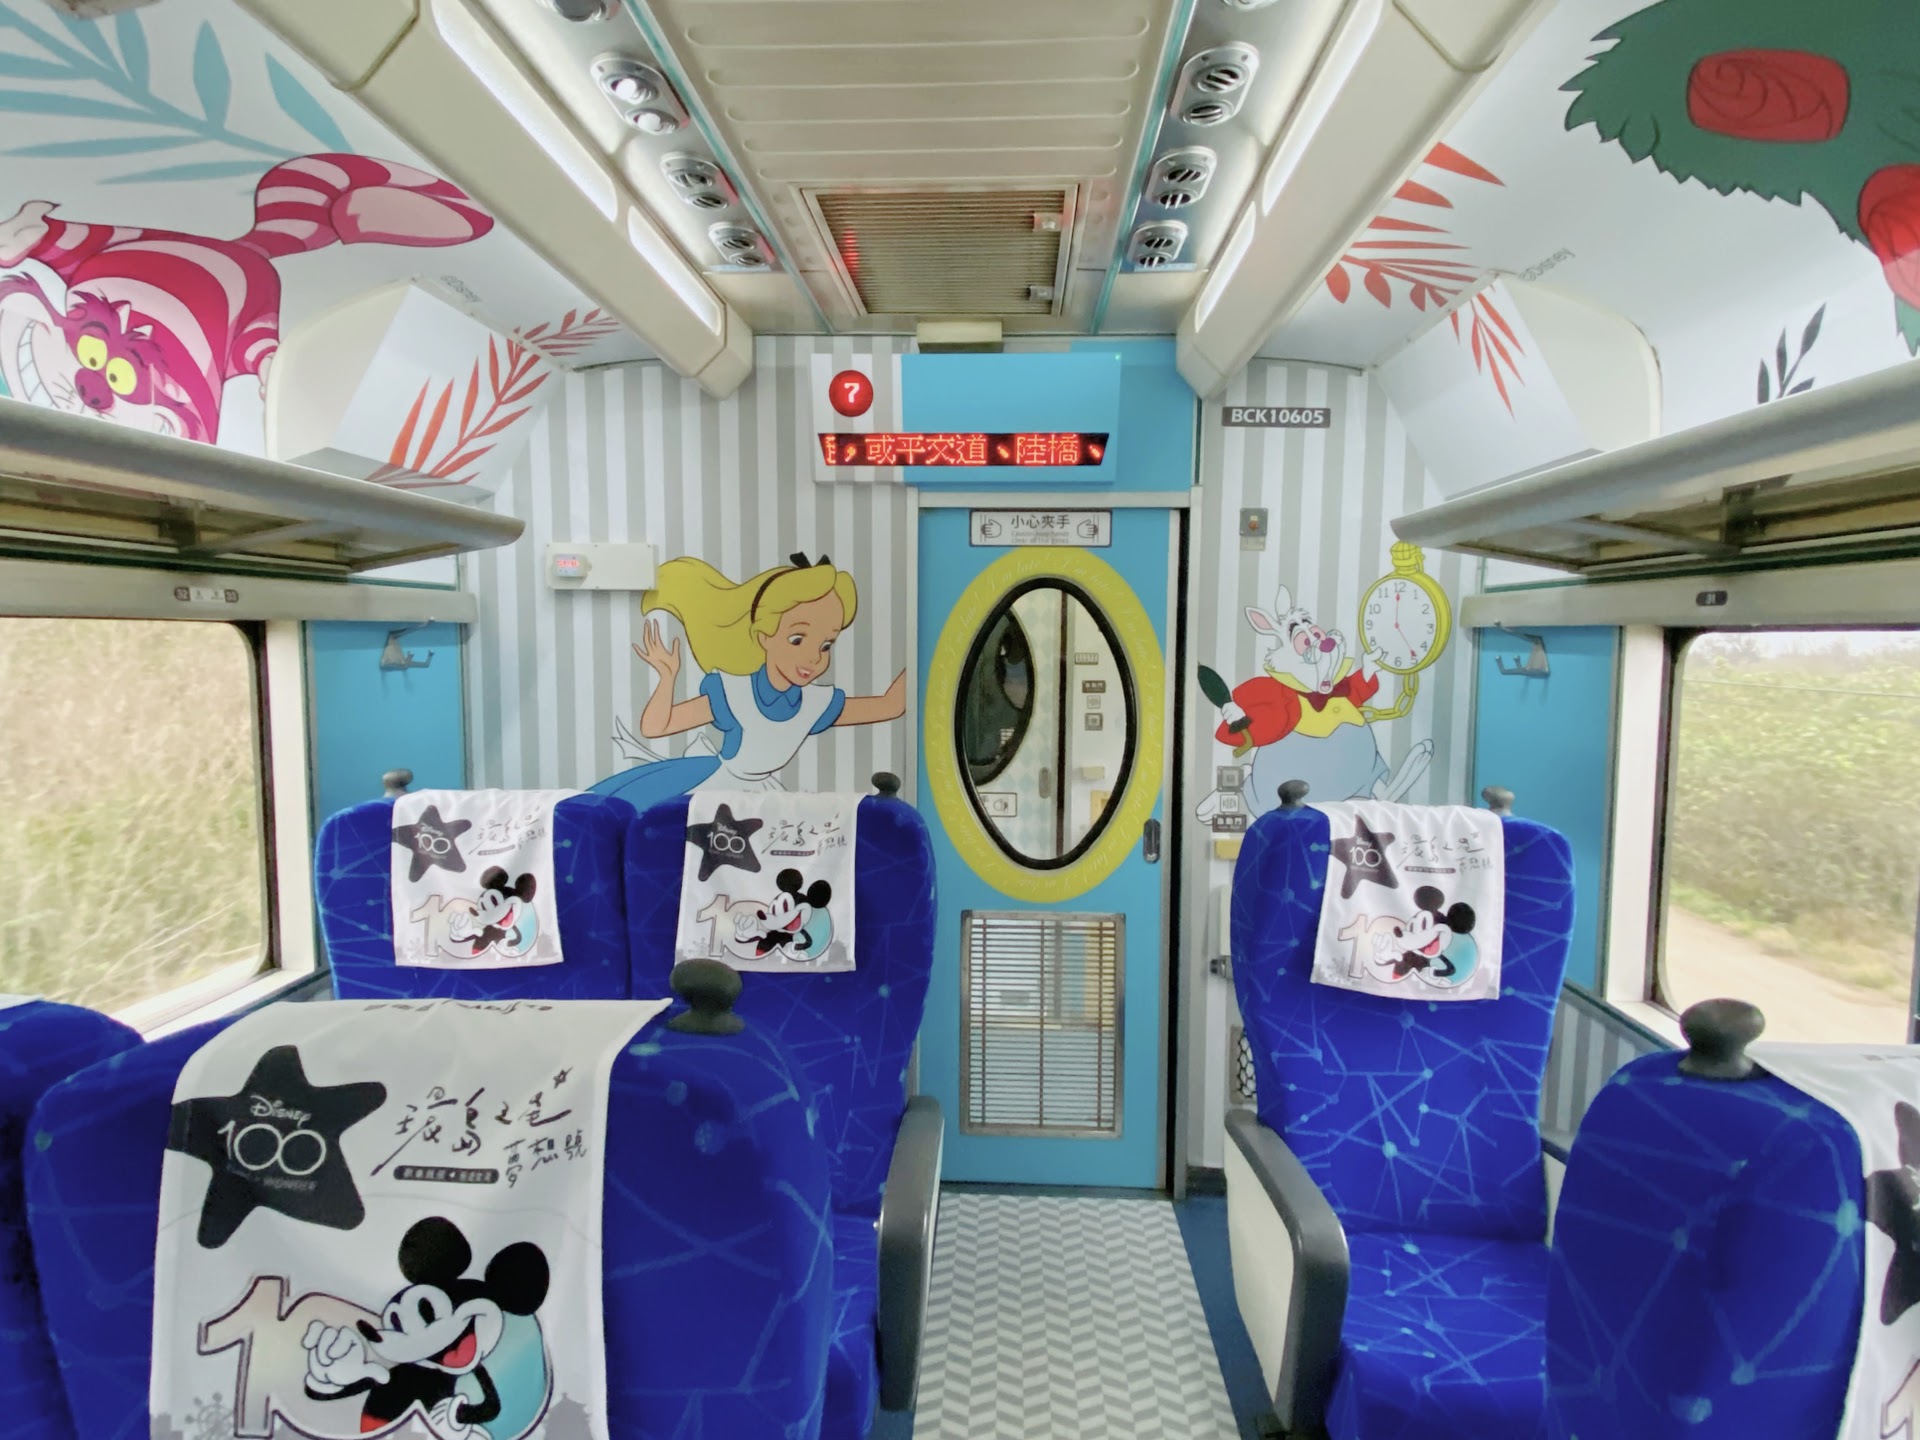 環島之星夢想號迪士尼主題列車